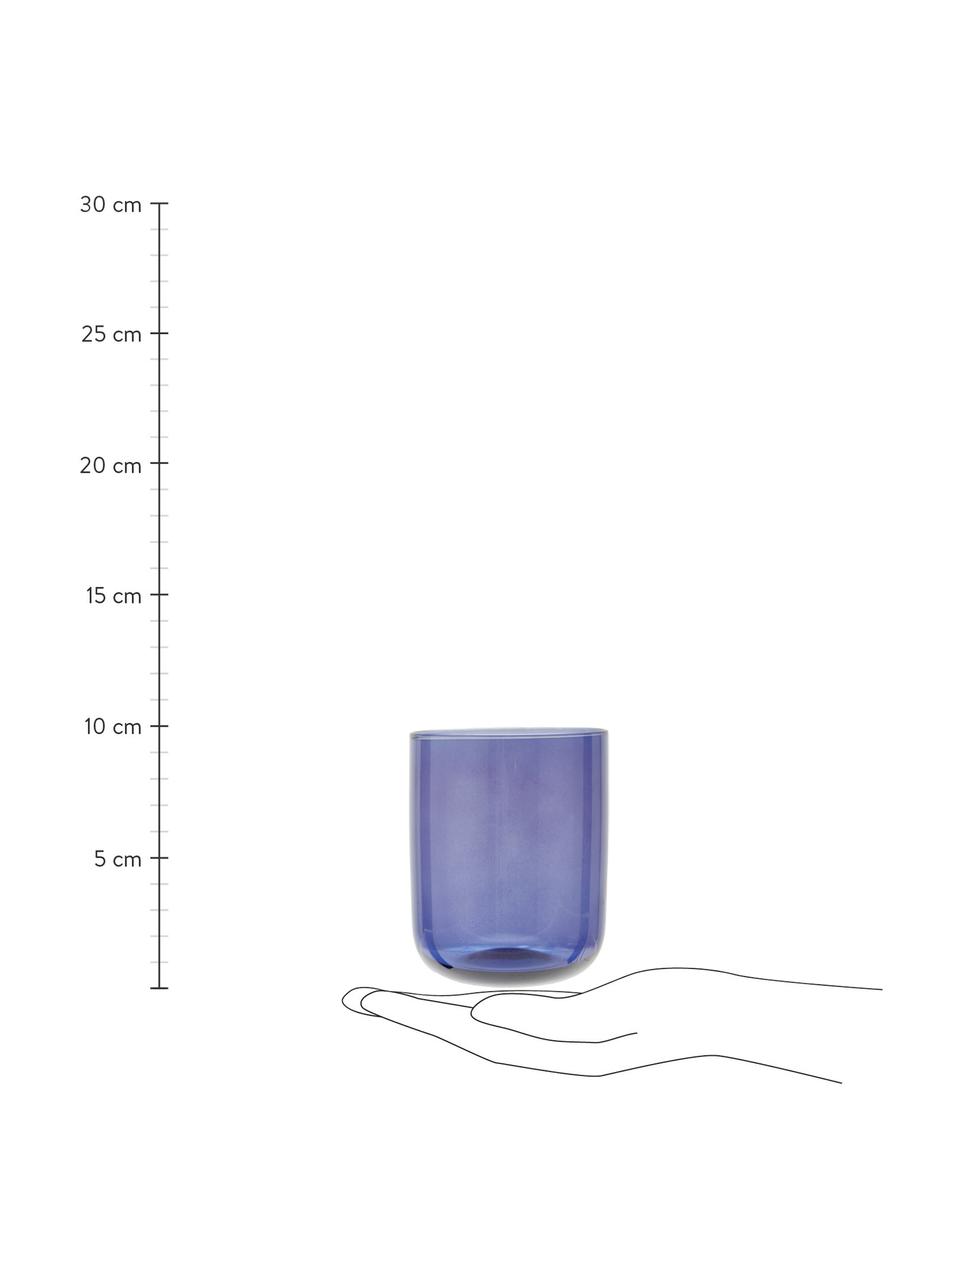 Mundgeblasene Wassergläser Diseguale in unterschiedlichen Farben und Formen, 6 Stück, Glas, mundgeblasen, Bunt, Ø 8 x H 10 cm, 200 ml